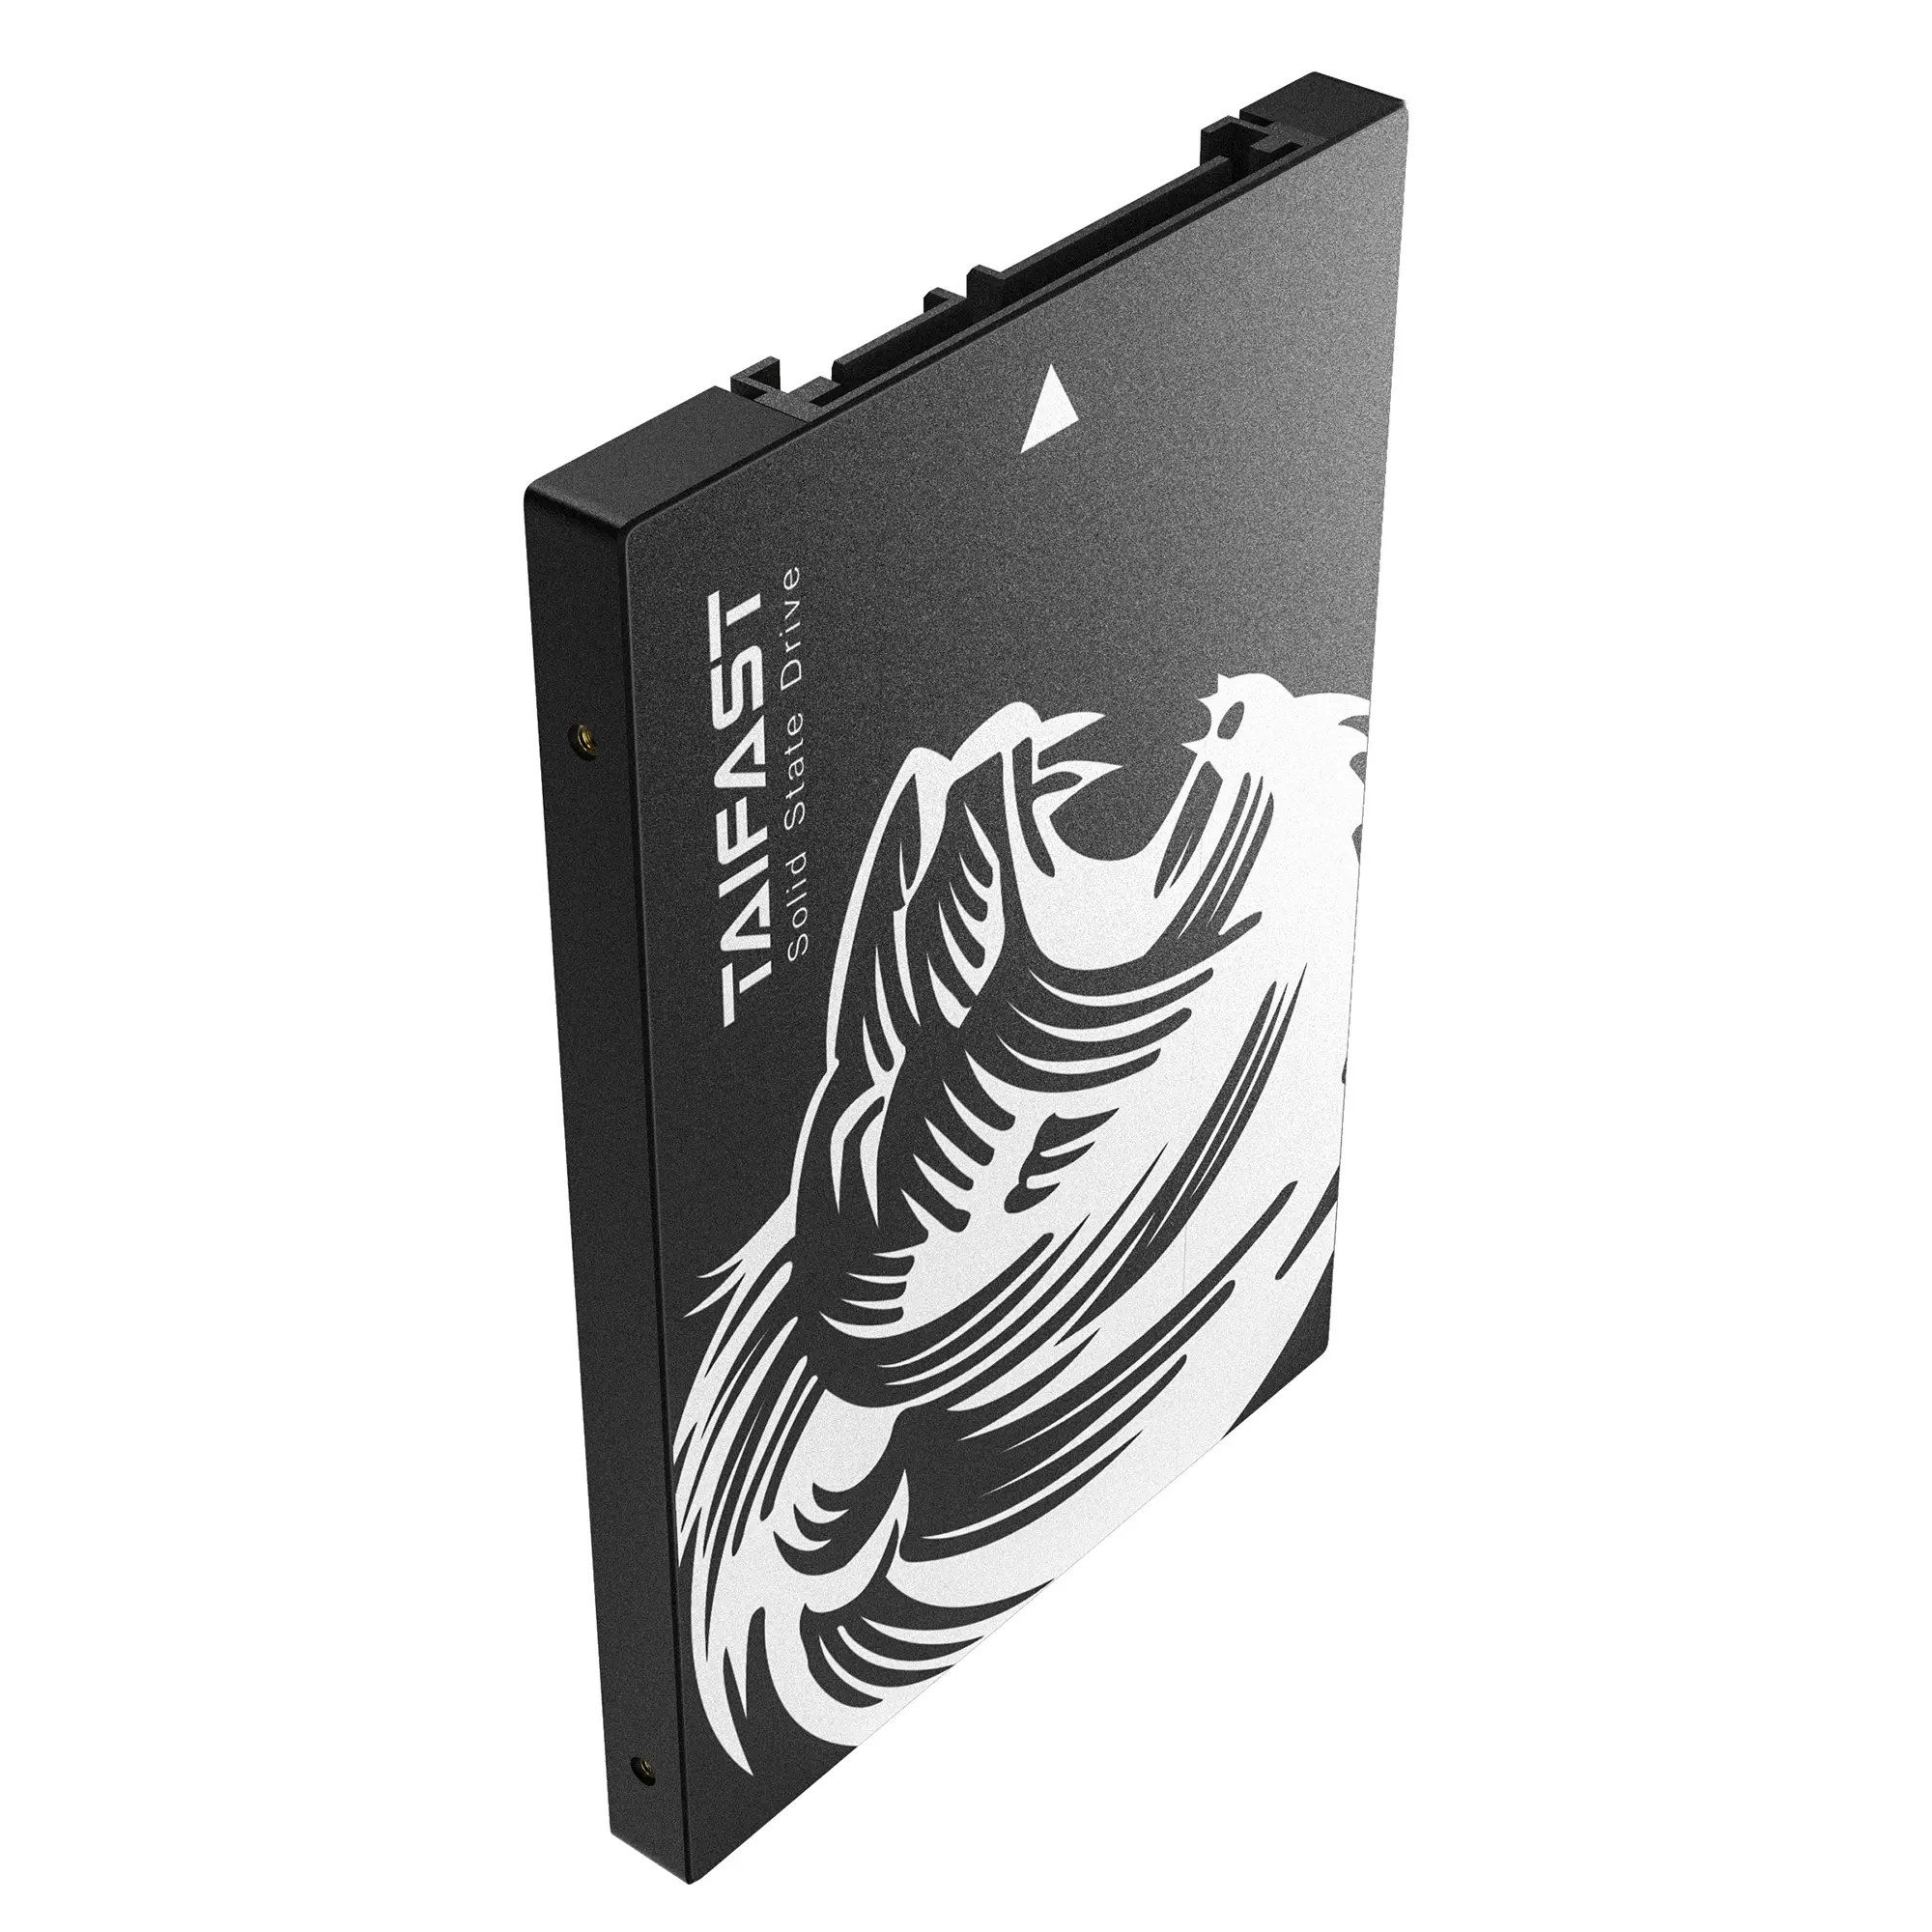 TAIFAST SSD120GB 240GB 480GB 1TB 2.5 inch SSD 512GB SATA III Internal Solid State Drive HDD SSD Hard Drive for PC Laptop Desktop